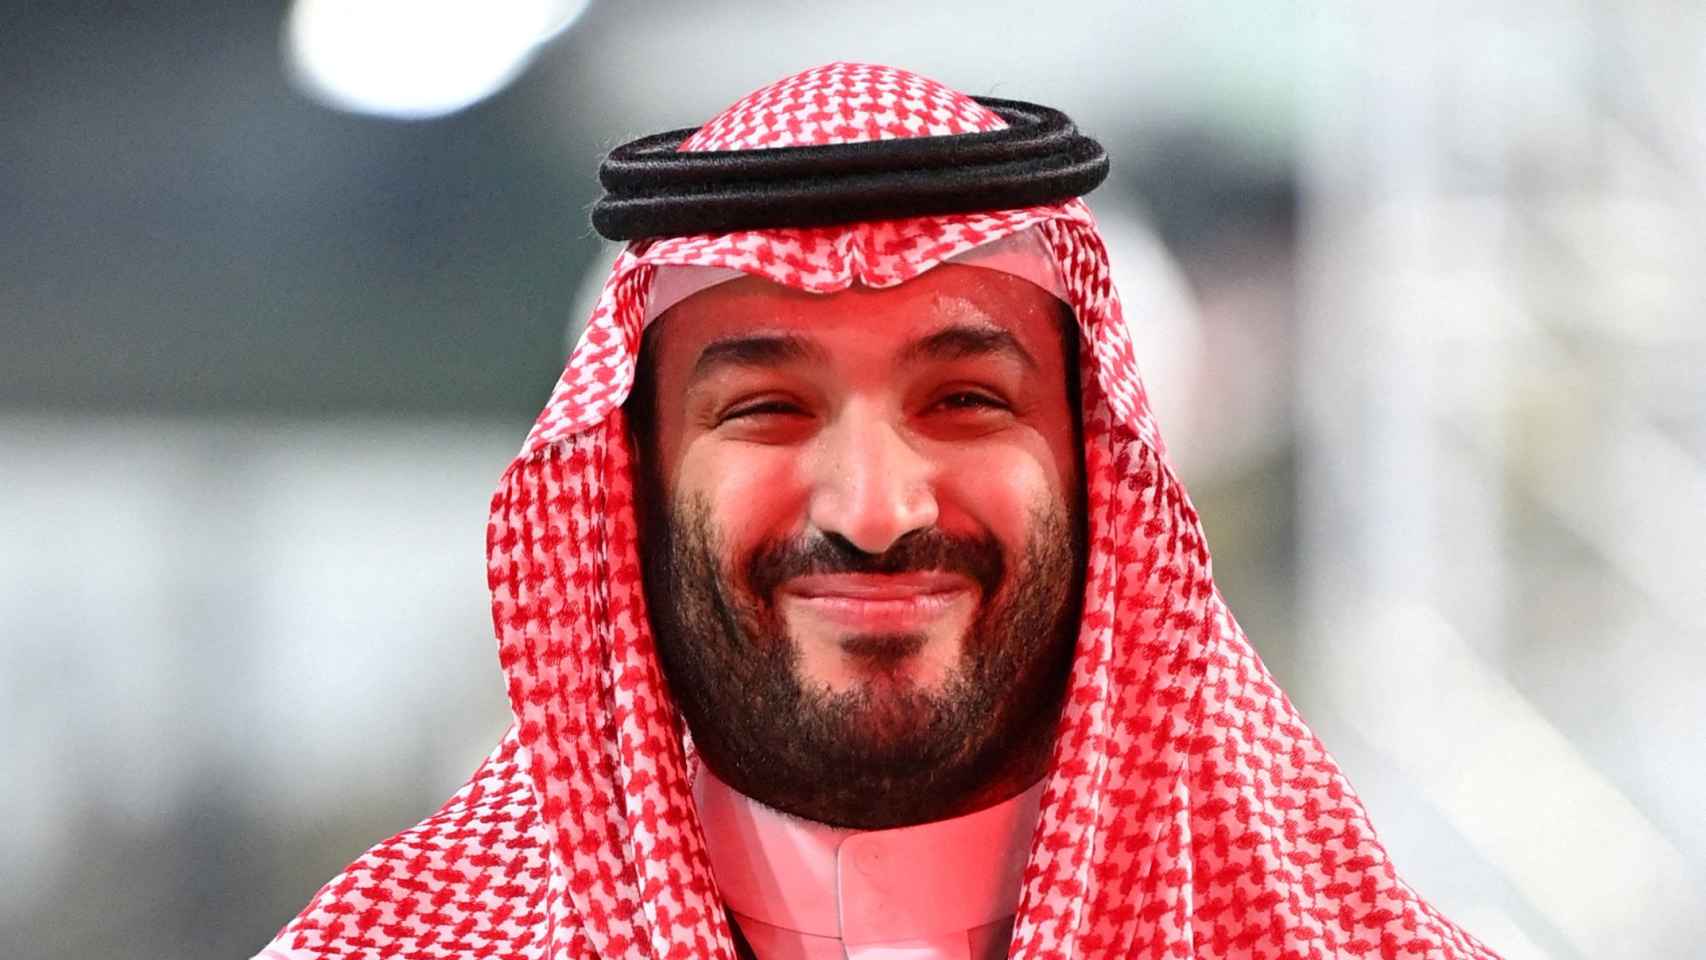 El príncipe heredero de Arabia Saudita, Mohammed bin Salman.